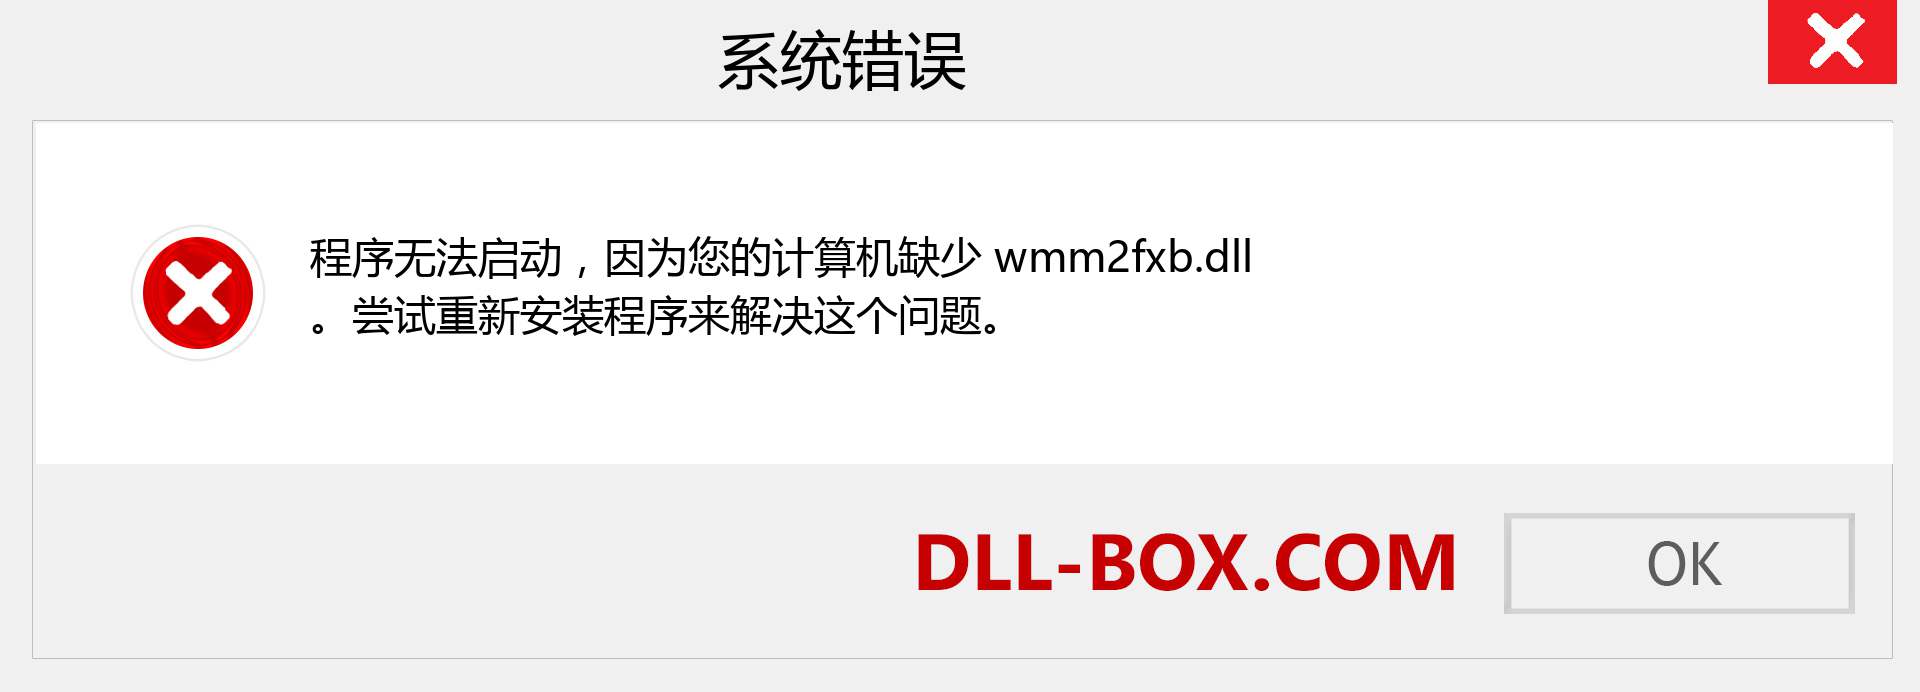 wmm2fxb.dll 文件丢失？。 适用于 Windows 7、8、10 的下载 - 修复 Windows、照片、图像上的 wmm2fxb dll 丢失错误